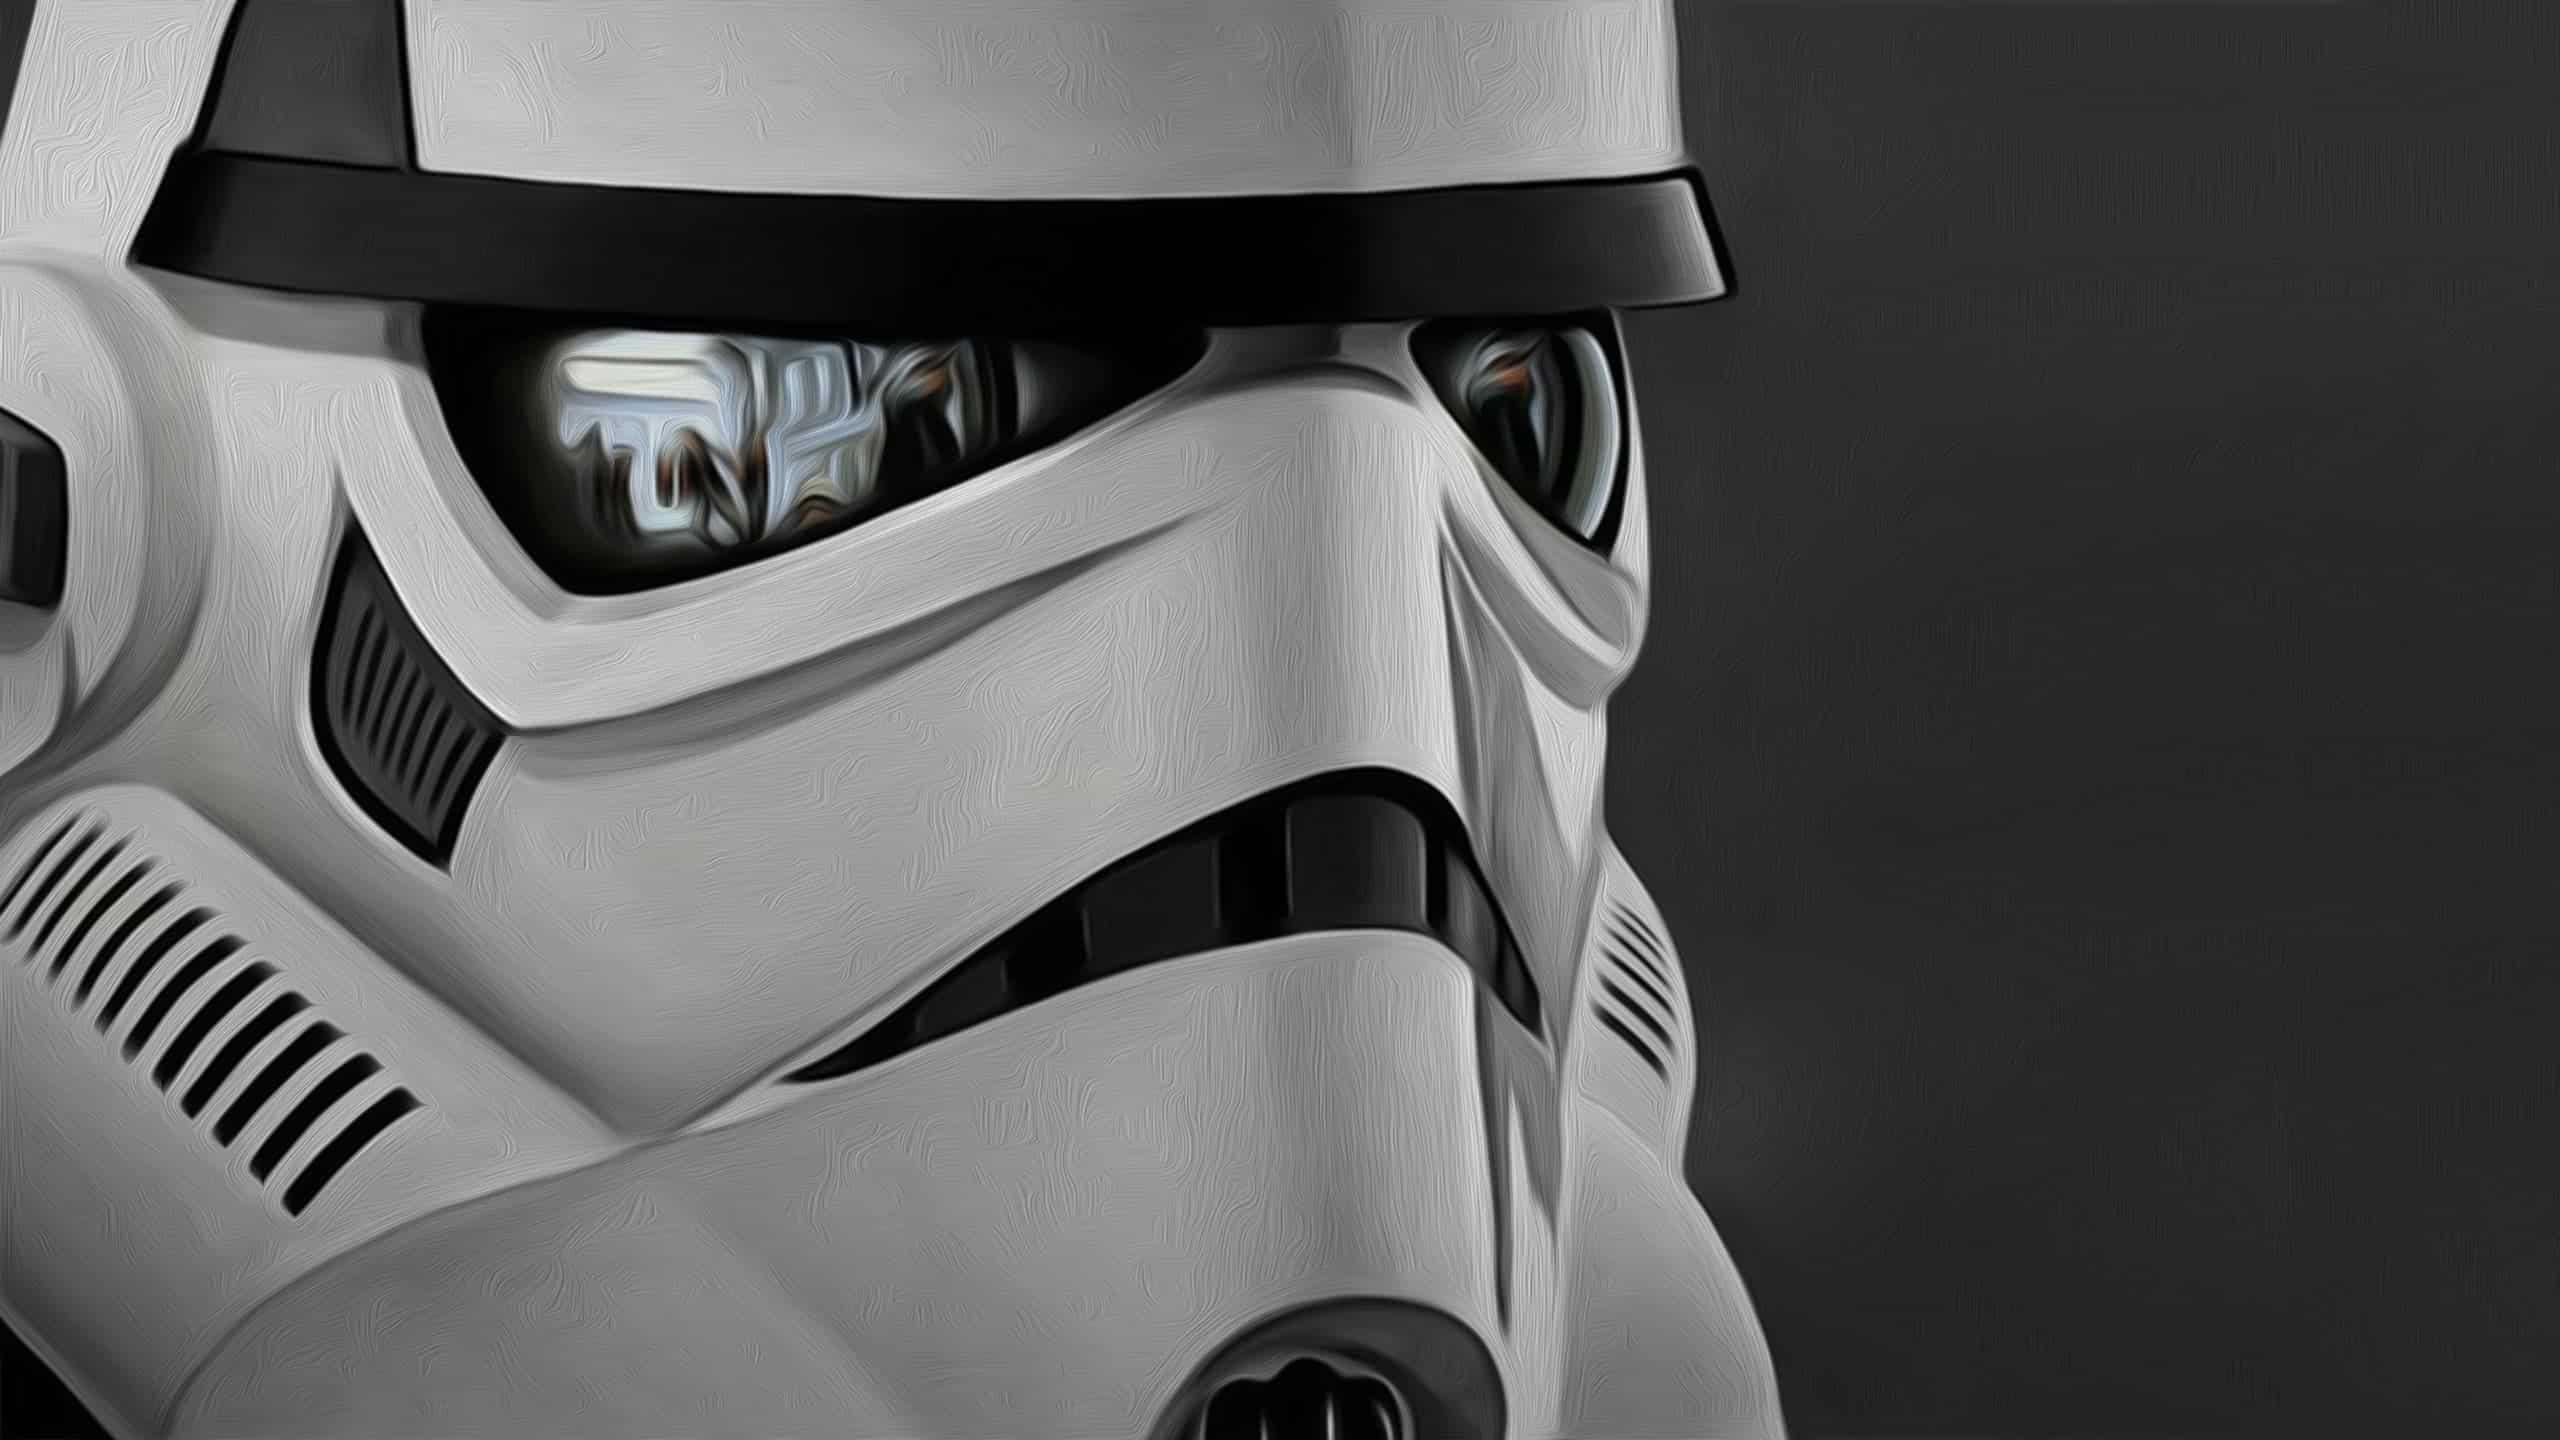 2560 x 1440 · jpeg - Star Wars Clone Trooper WQHD 1440p Wallpaper | Pixelz